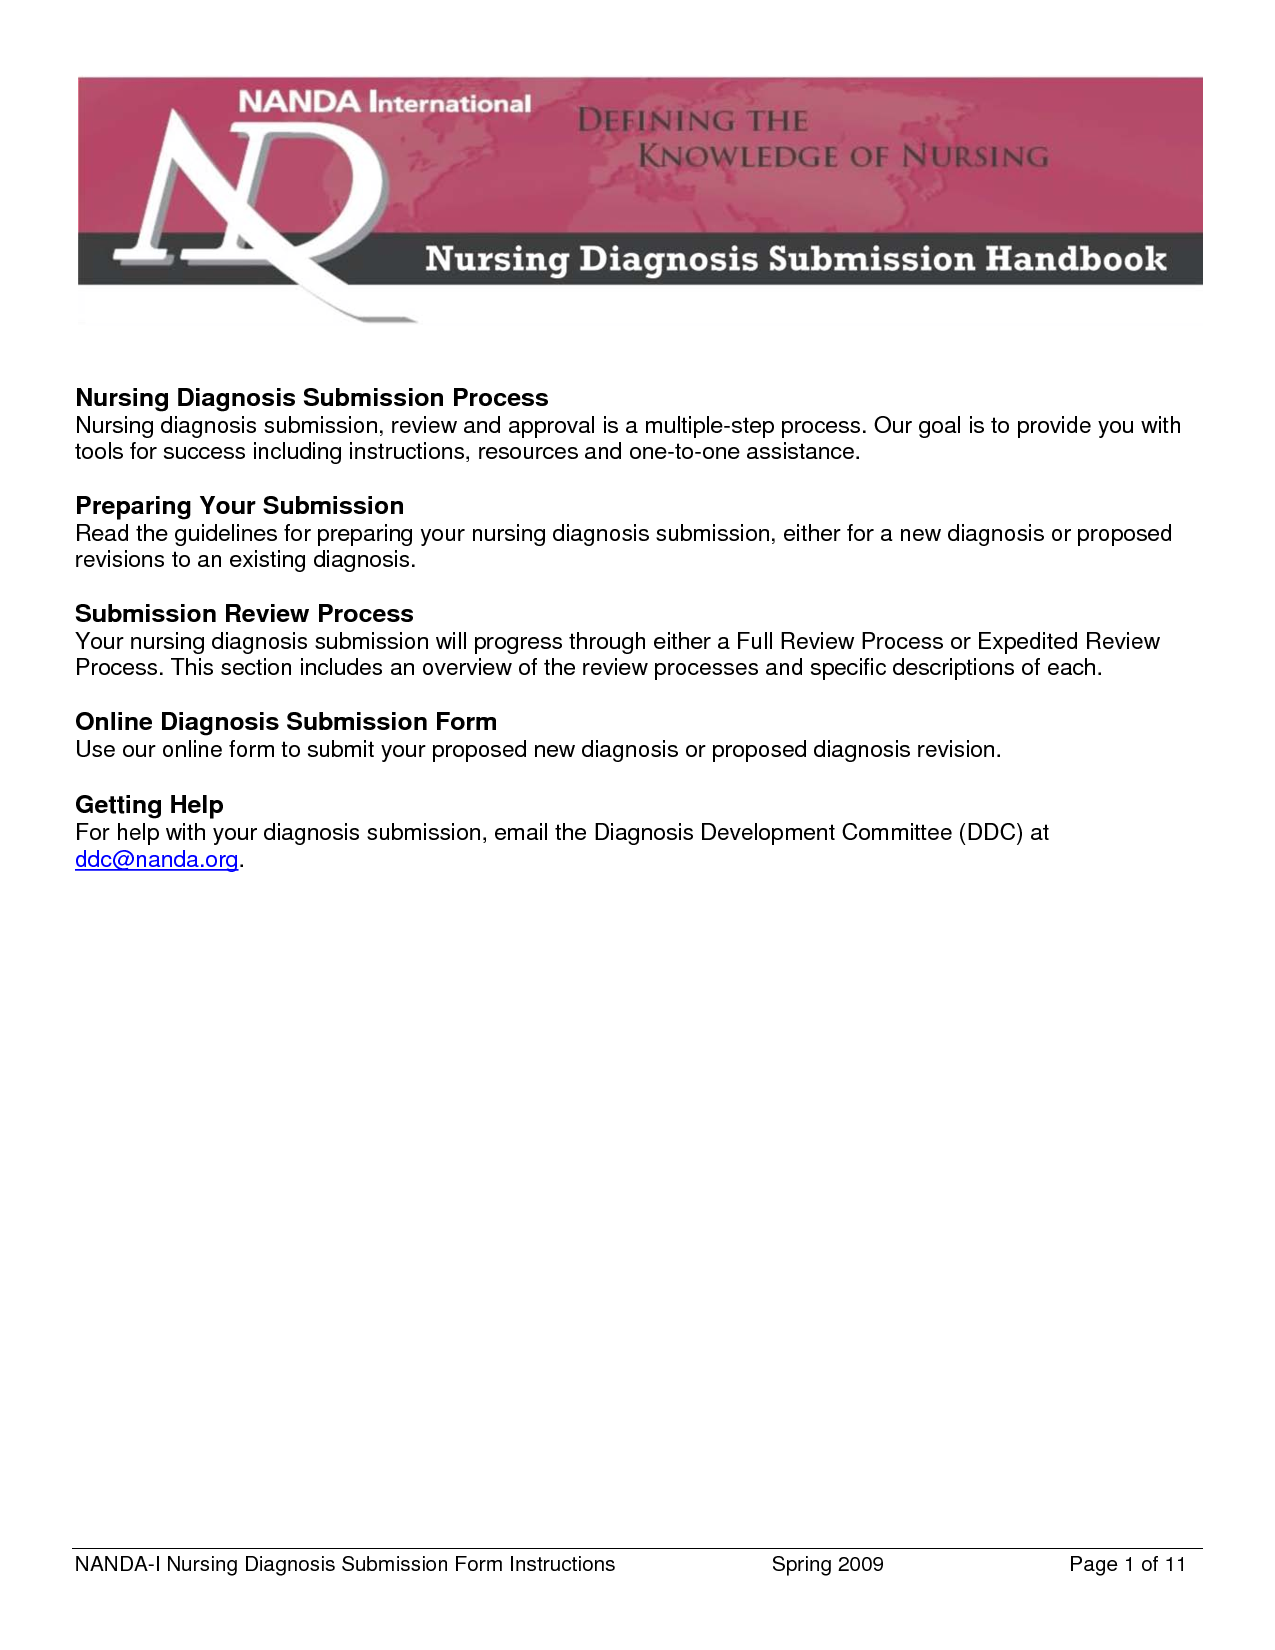 nanda nursing diagnosis list for hypertensionJSjo